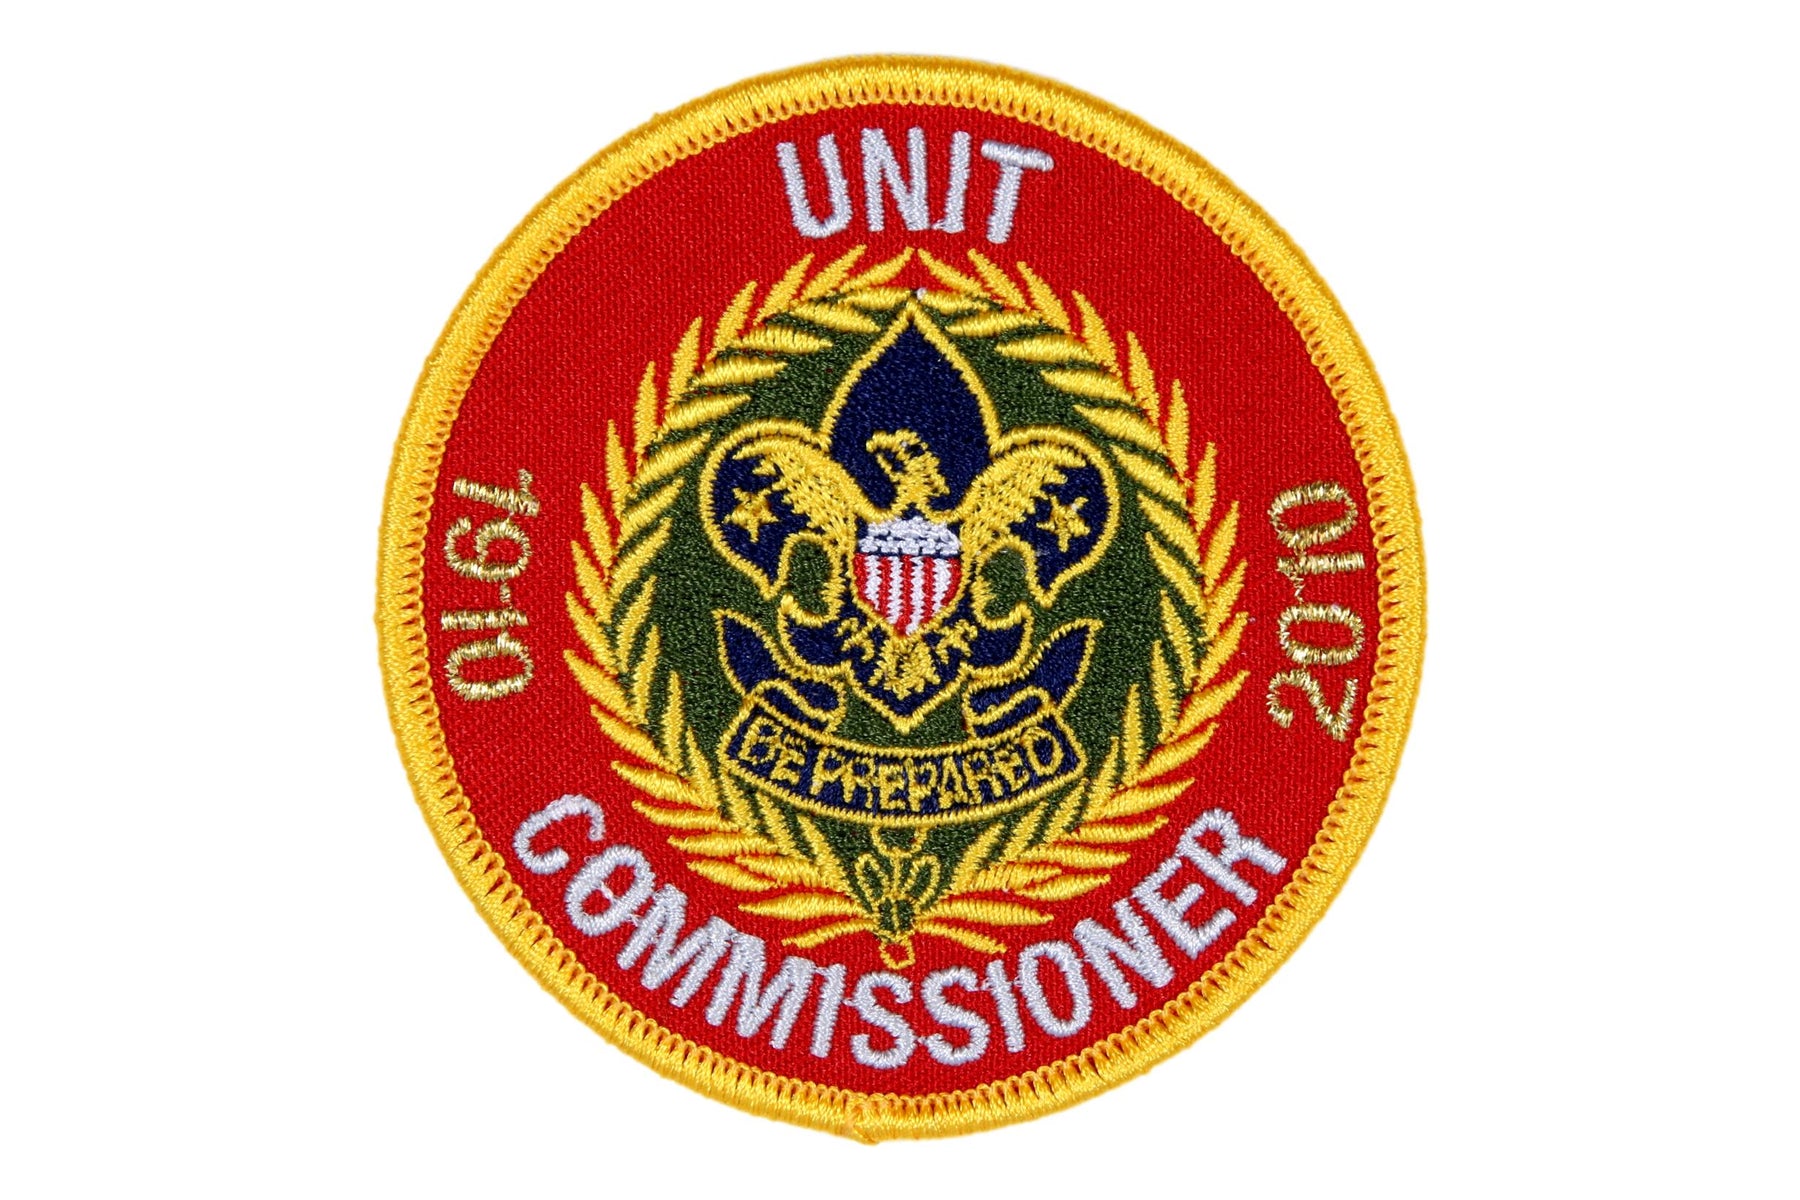 Unit Commissioner Patch 2010